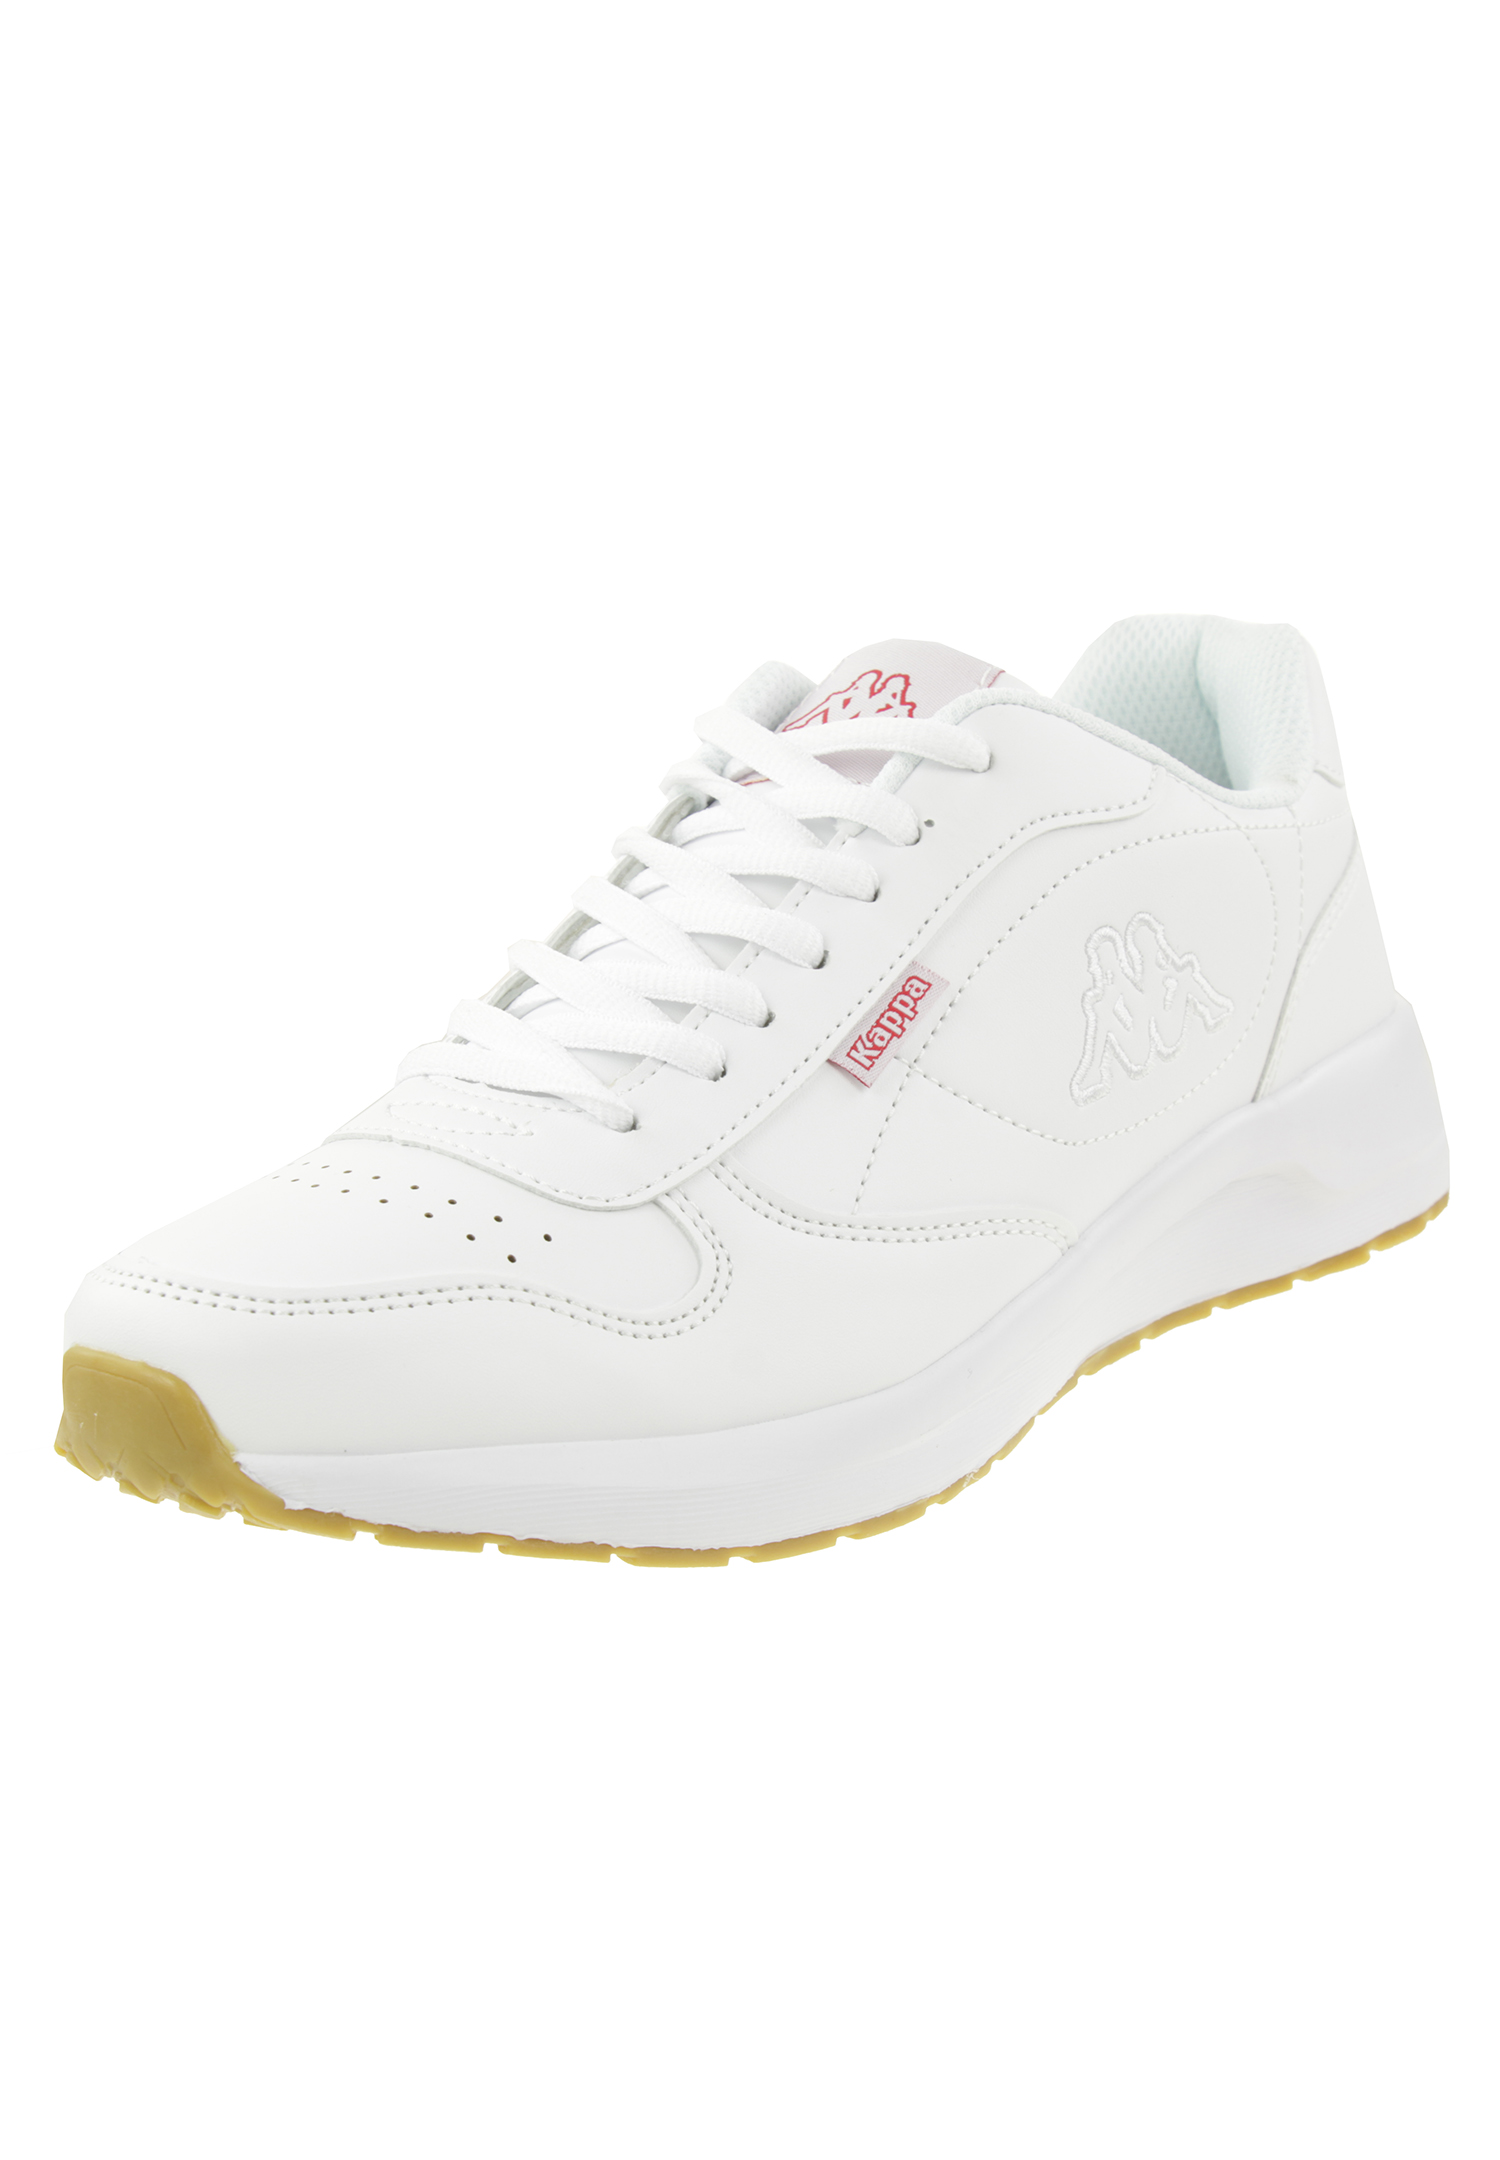 Kappa Unisex-Erwachsene Base II Sneaker, Weiß (White 1010), 37 EU